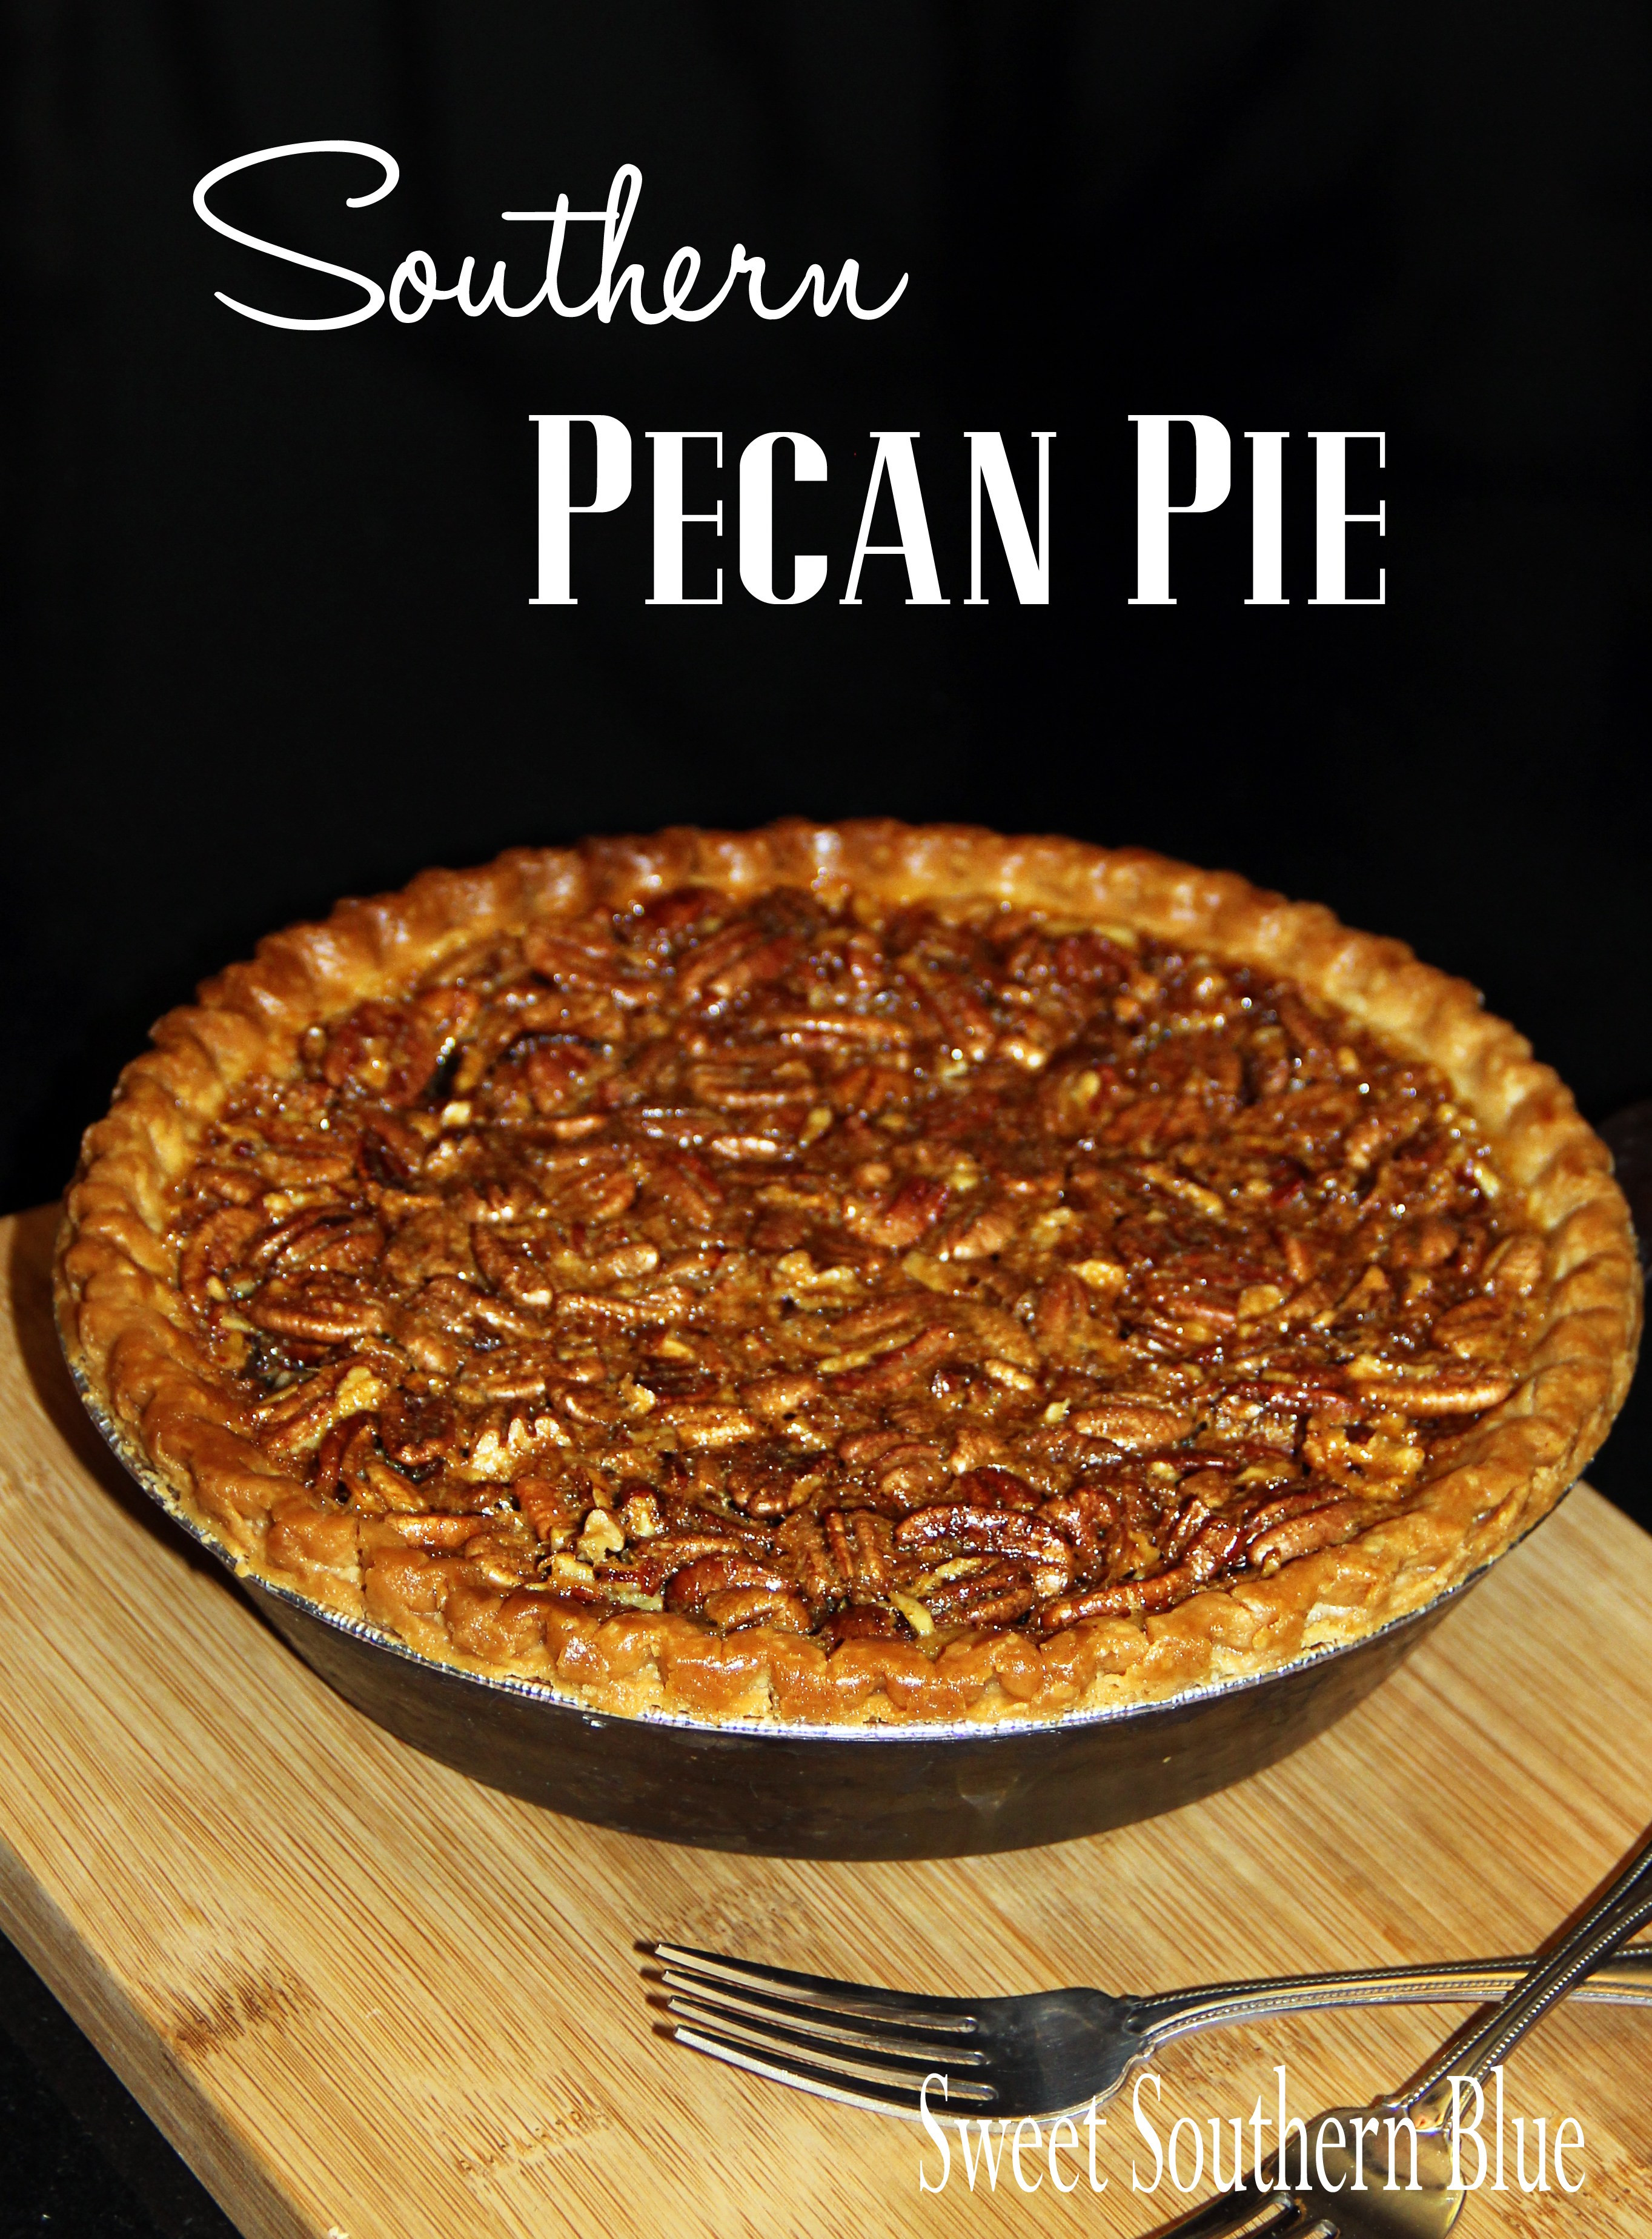 Pecan Pie Recipes
 Southern Pecan Pie